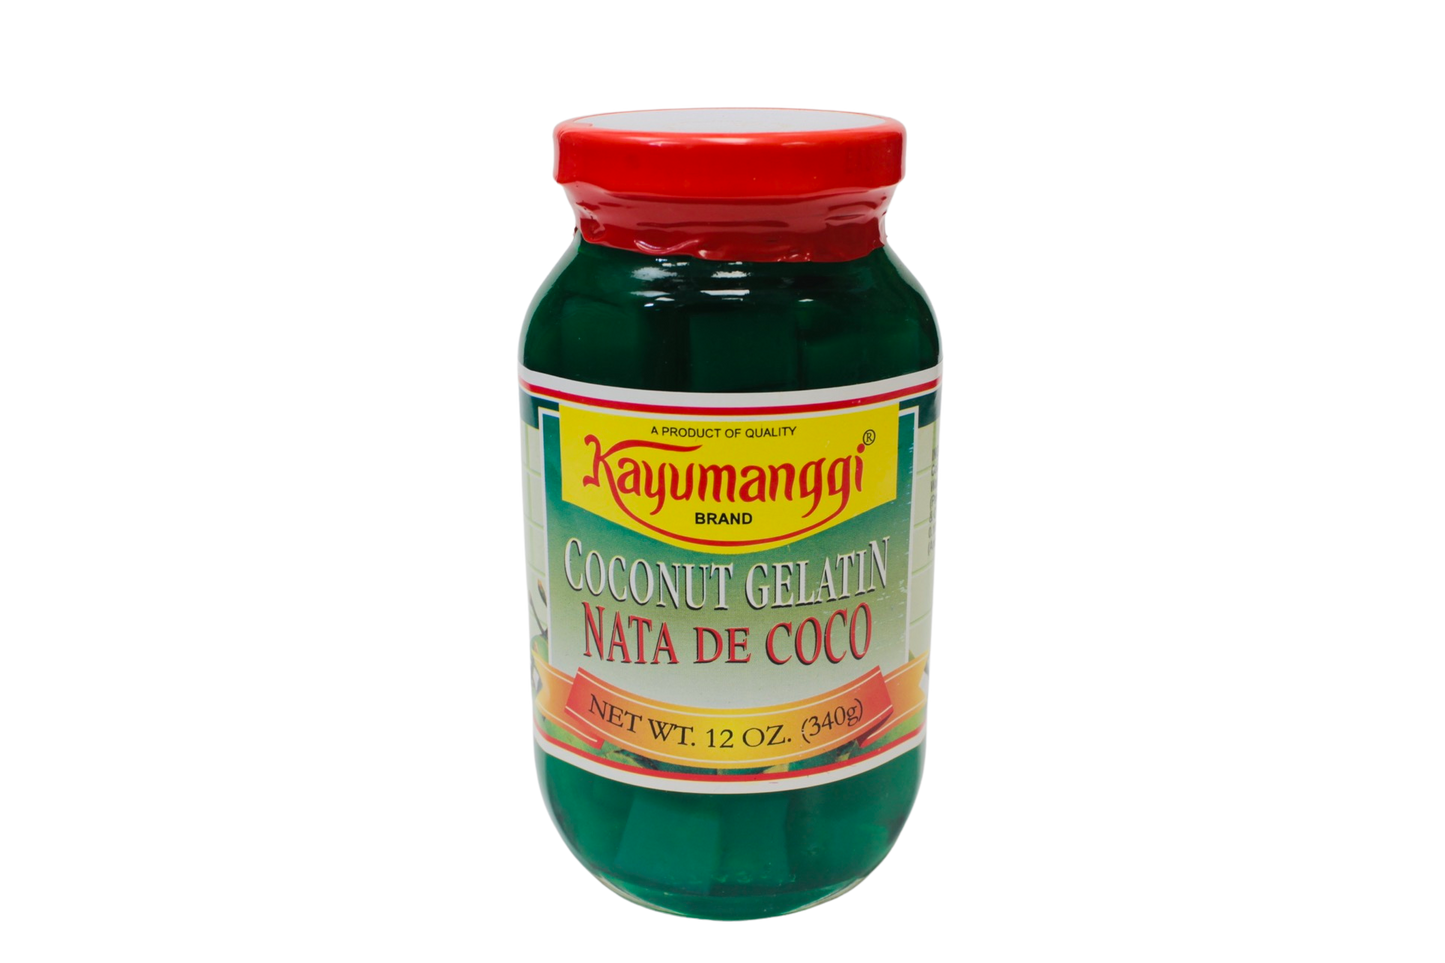 Kayumanggi Brand Coconut Gelatin Nata De Coco (Green) 340g